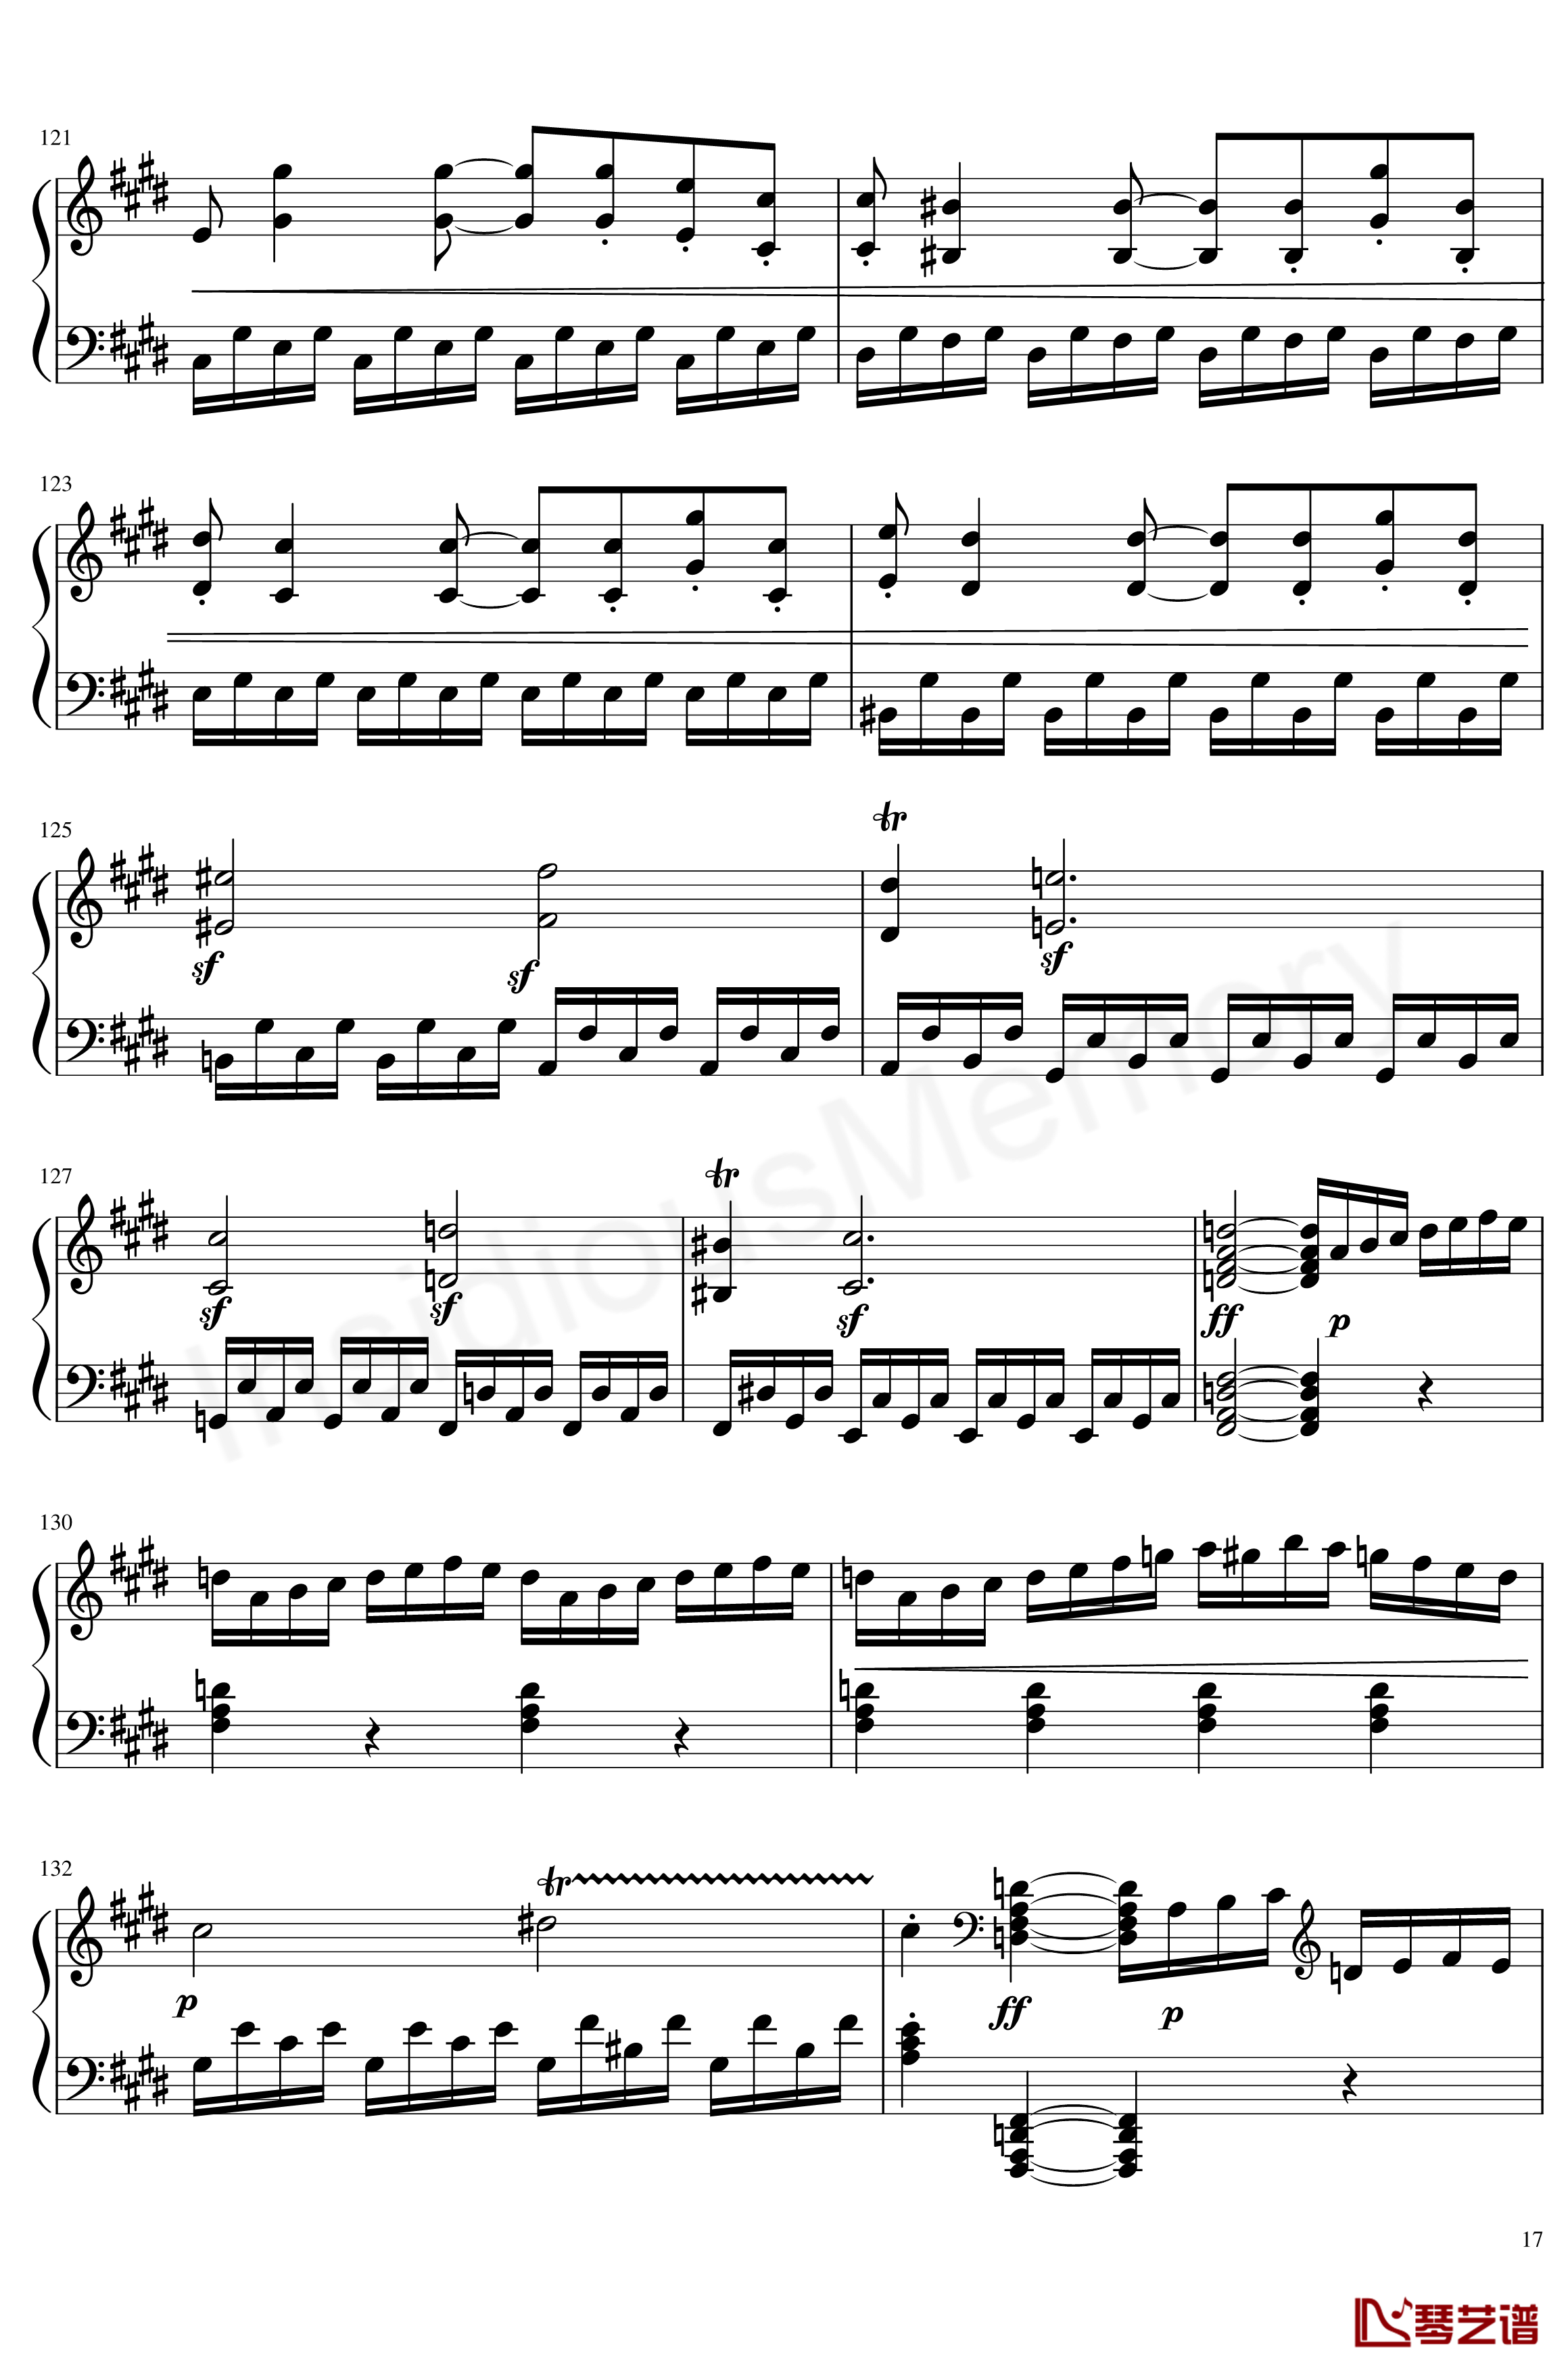 月光奏鸣曲钢琴谱-贝多芬-beethoven